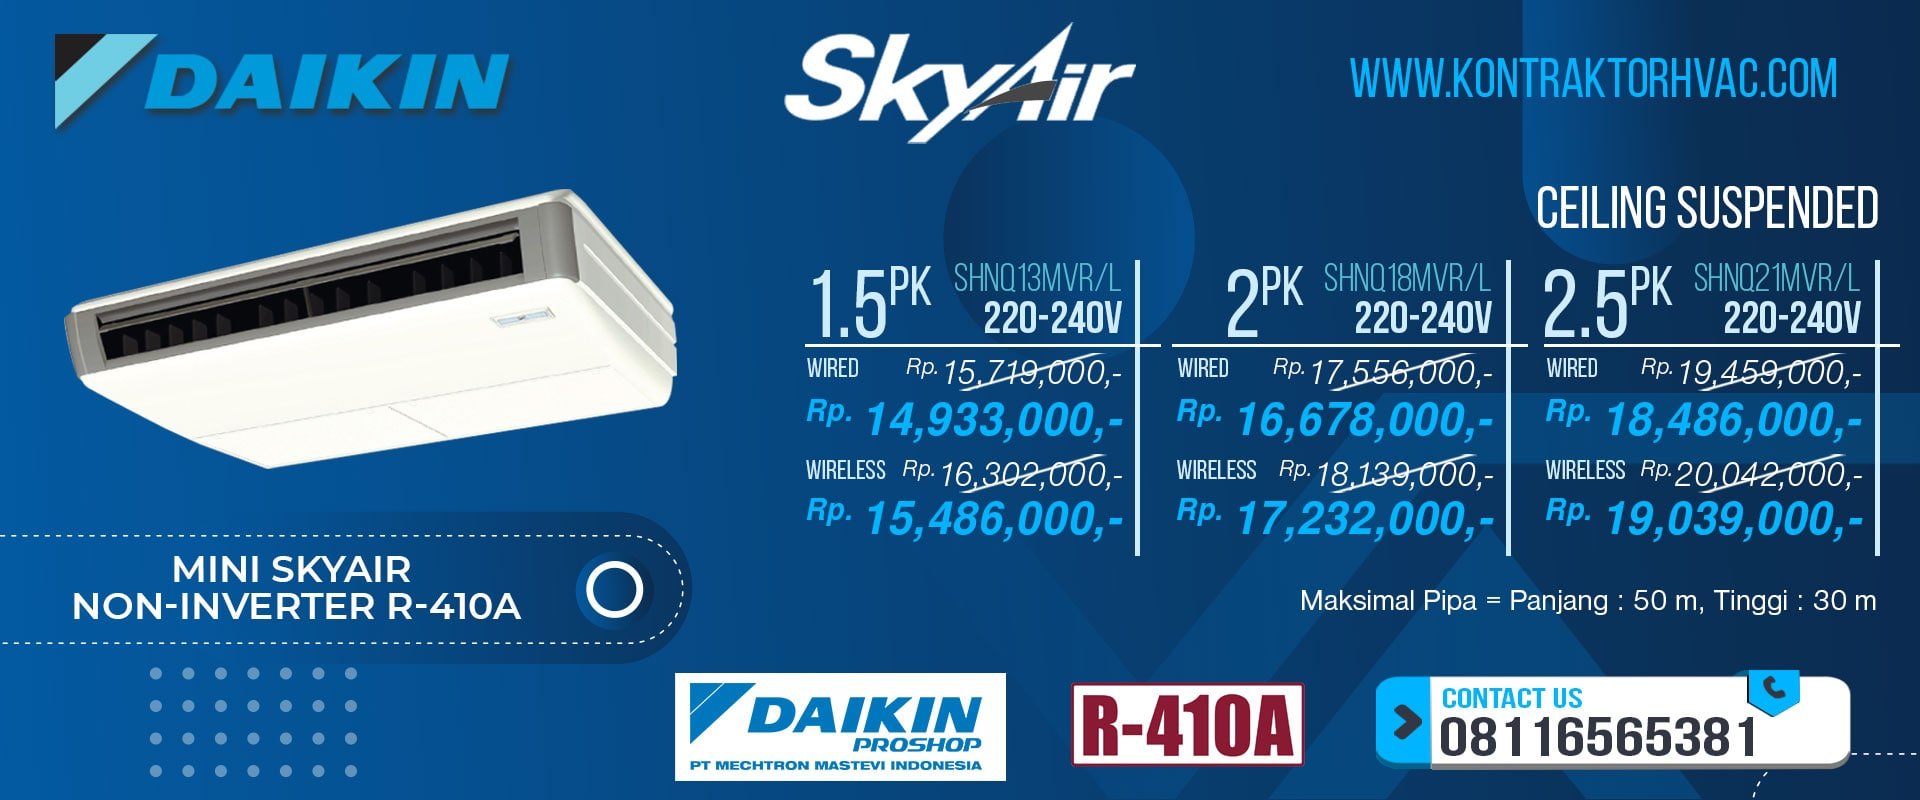 5.Skyair-Non-Inverter-R-410A-Ceiling-Suspended-V-min